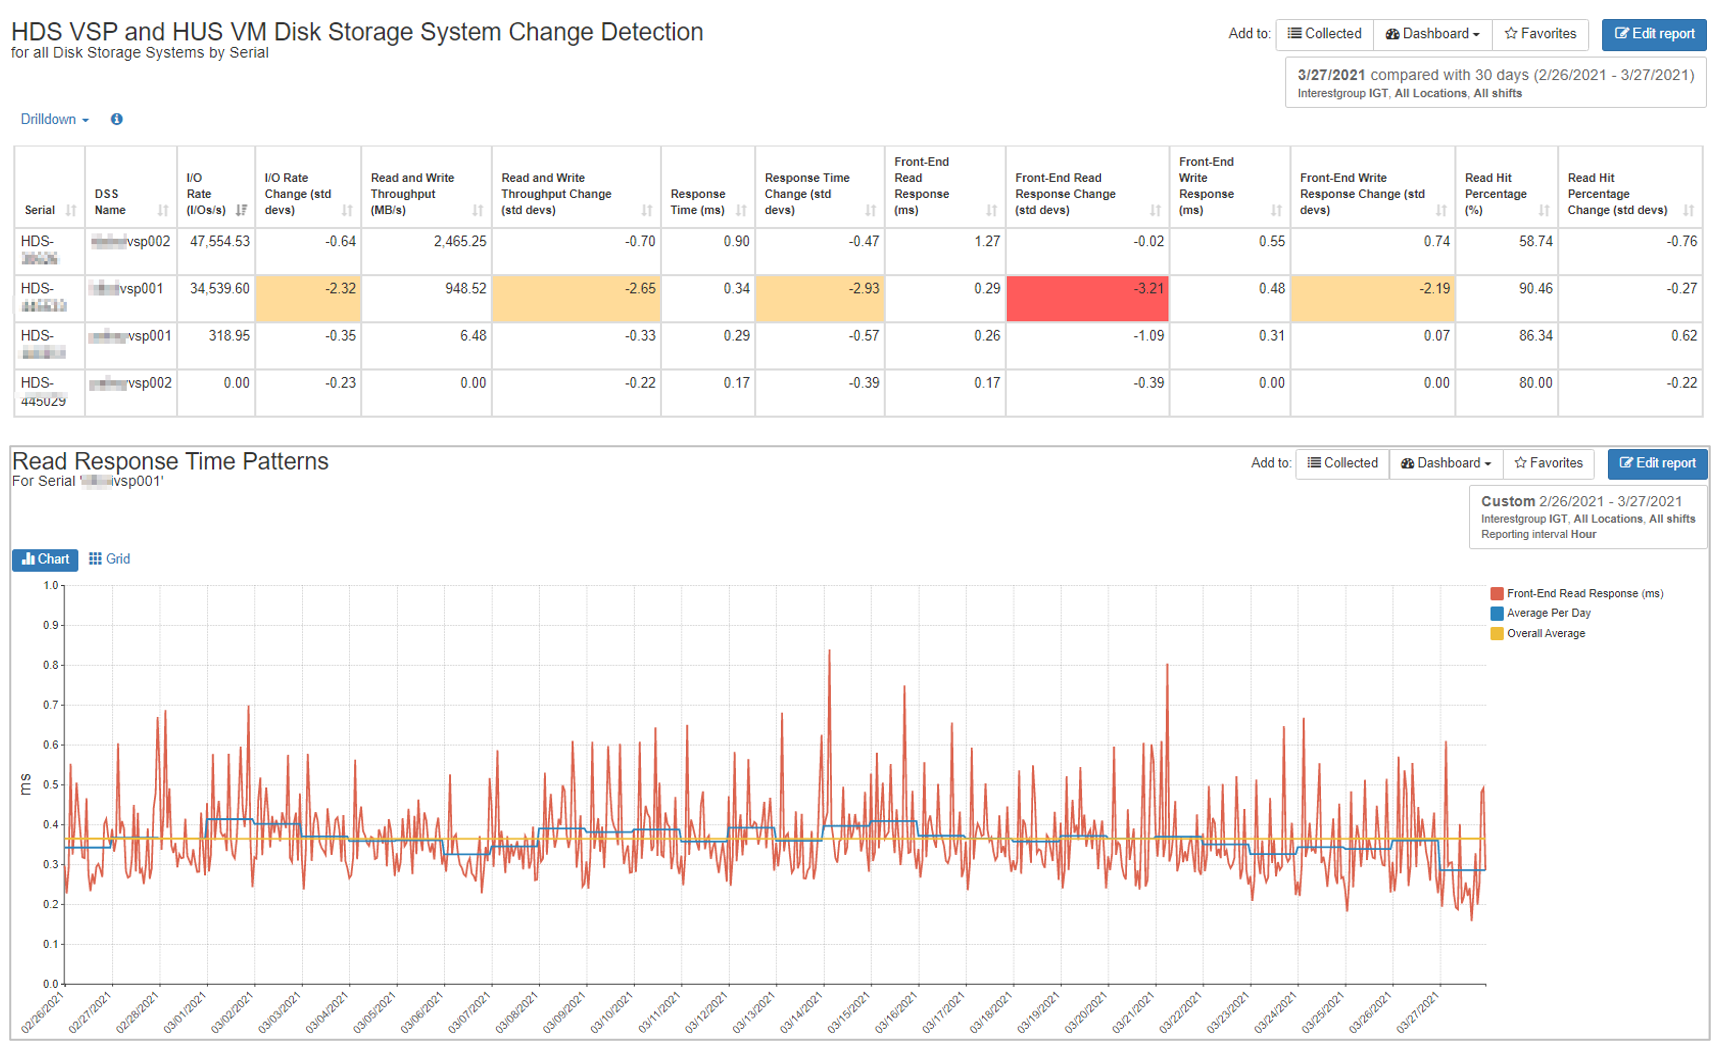 Hitachi VSP HUSVM Workload Change Detection